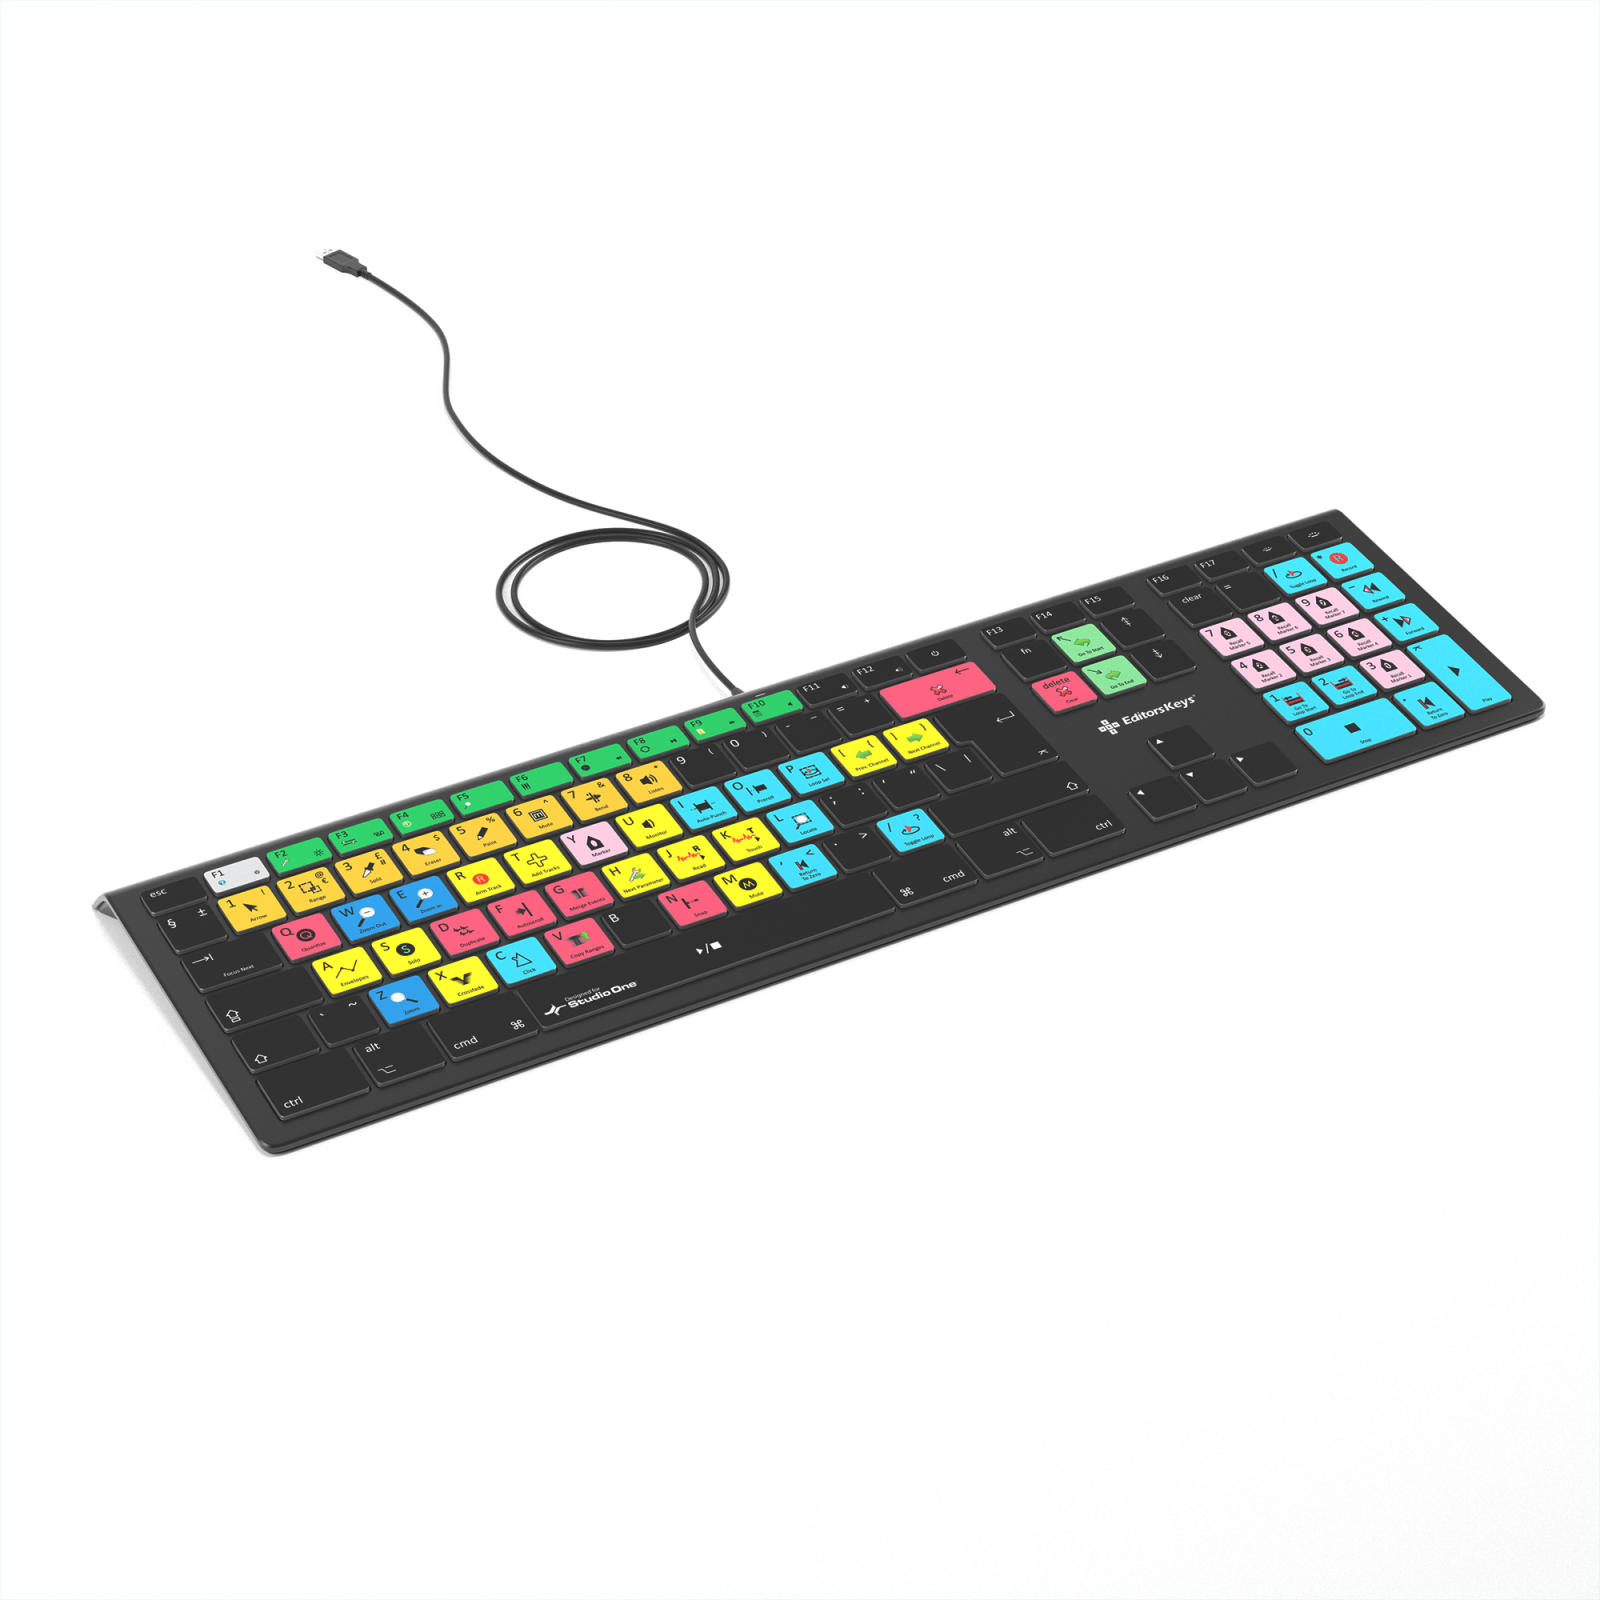 Keyboard Wrist Pads - Perfect Size